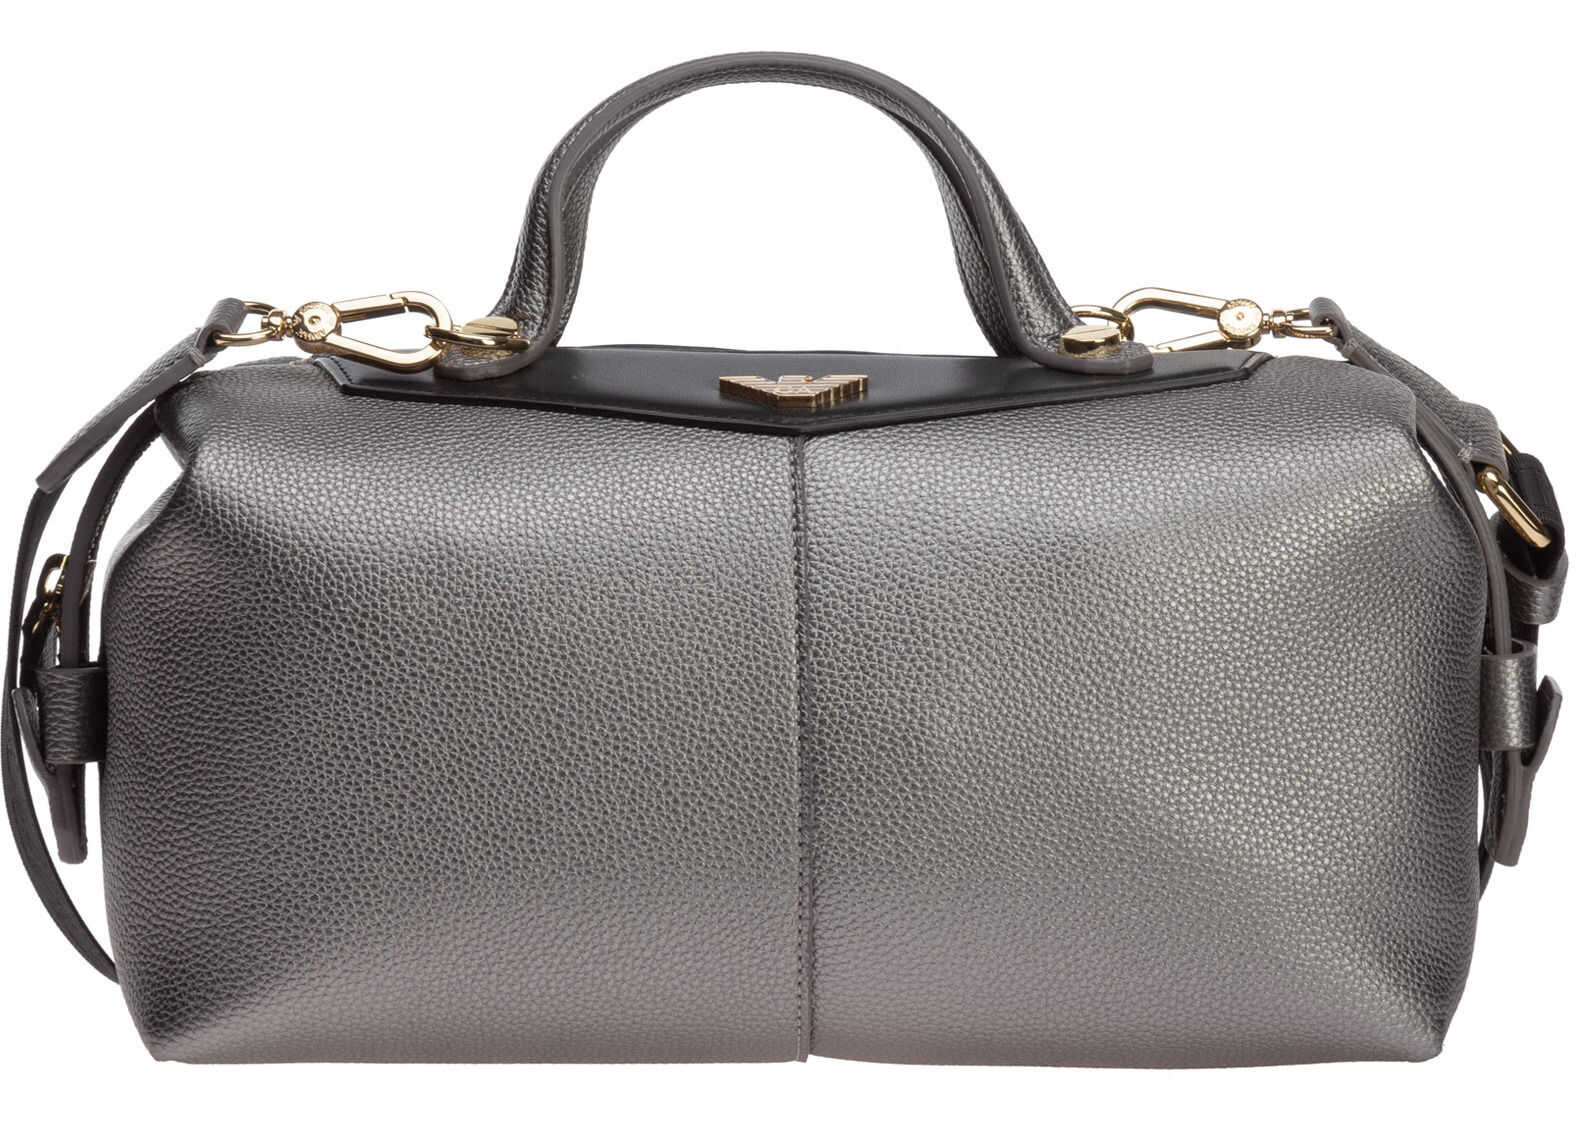 Emporio Armani Bag Purse Grey